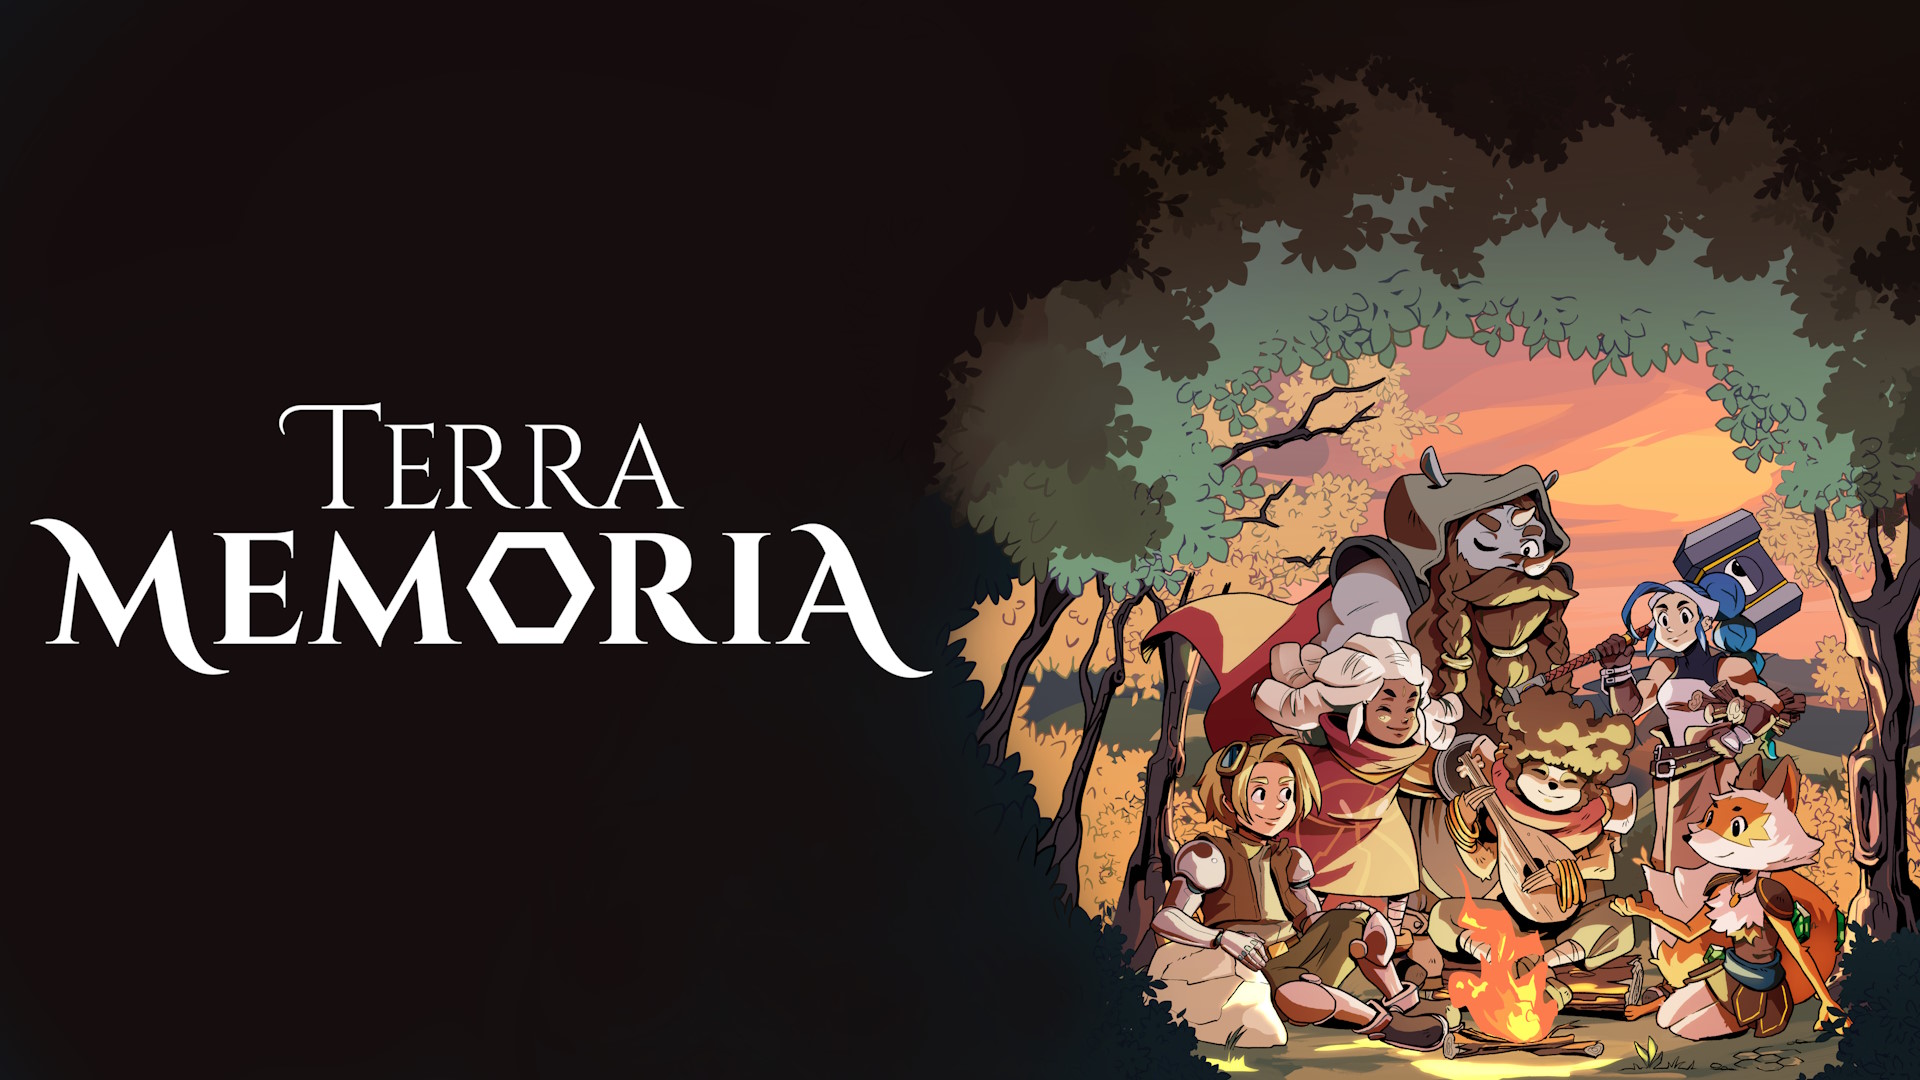  Terra Memoria Review – Pretty, but also pretty bland